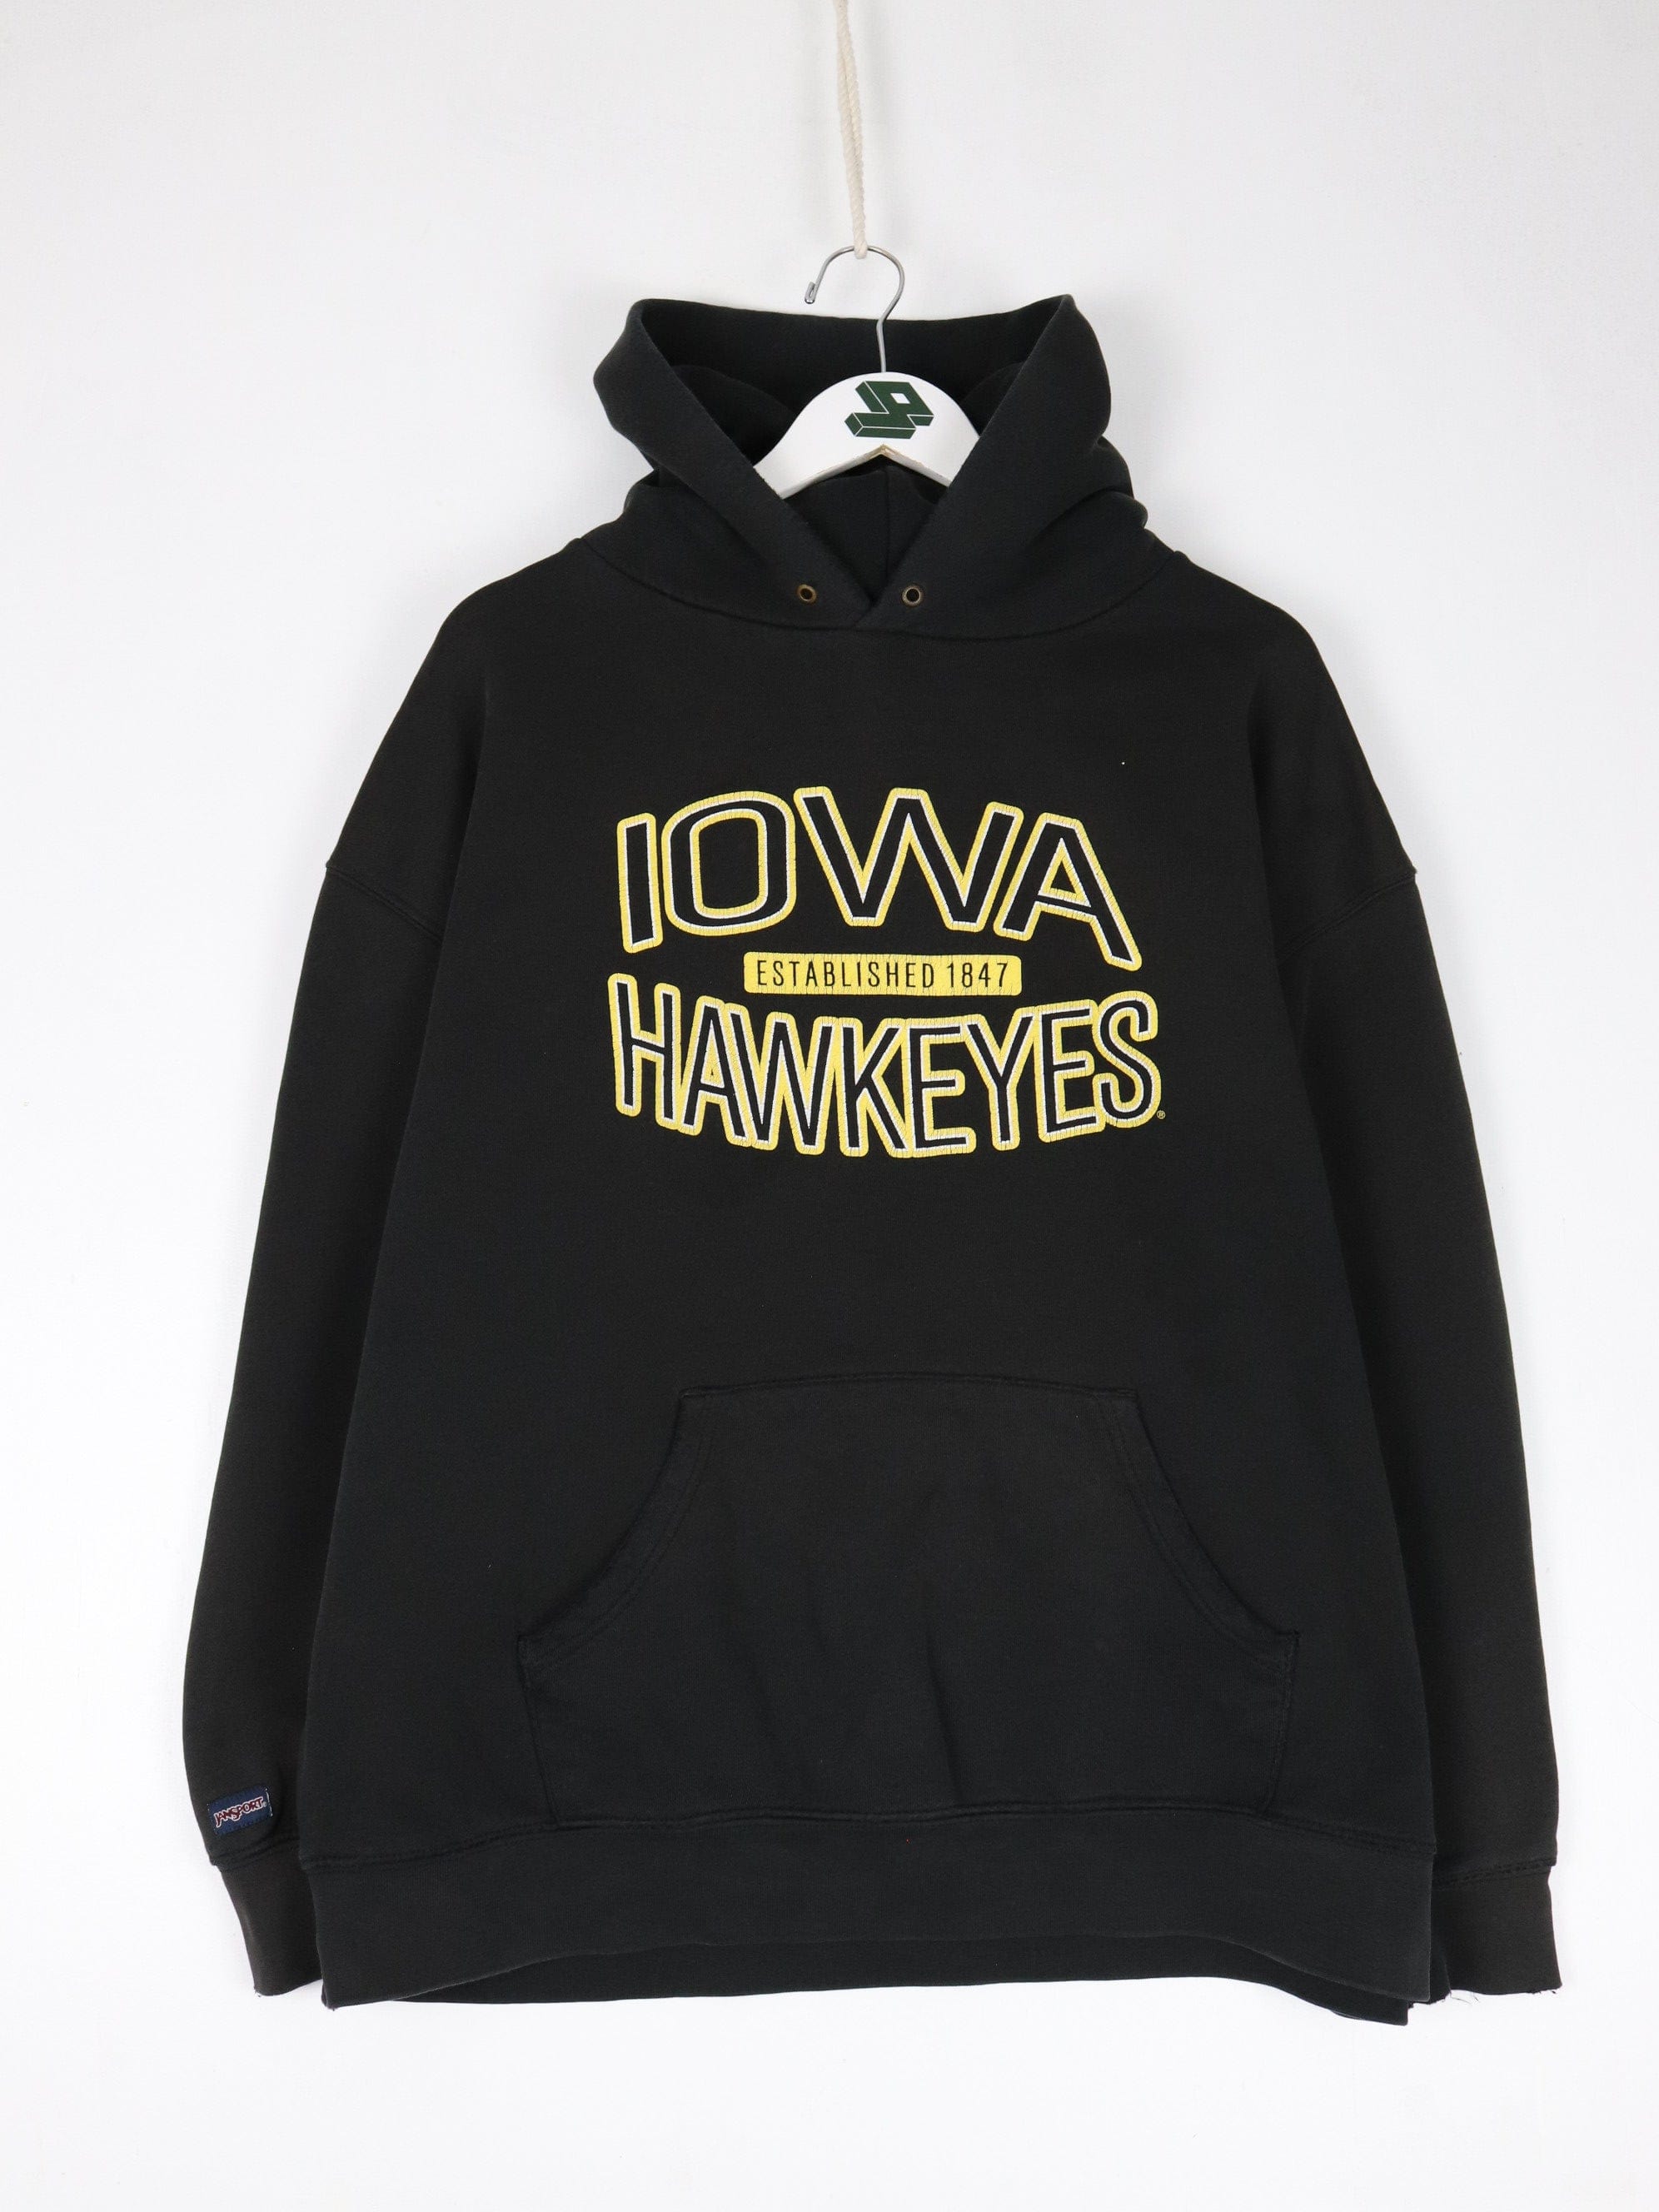 Vintage Iowa Hawkeyes Sweatshirt Mens 2XL Short Black College Hoodie